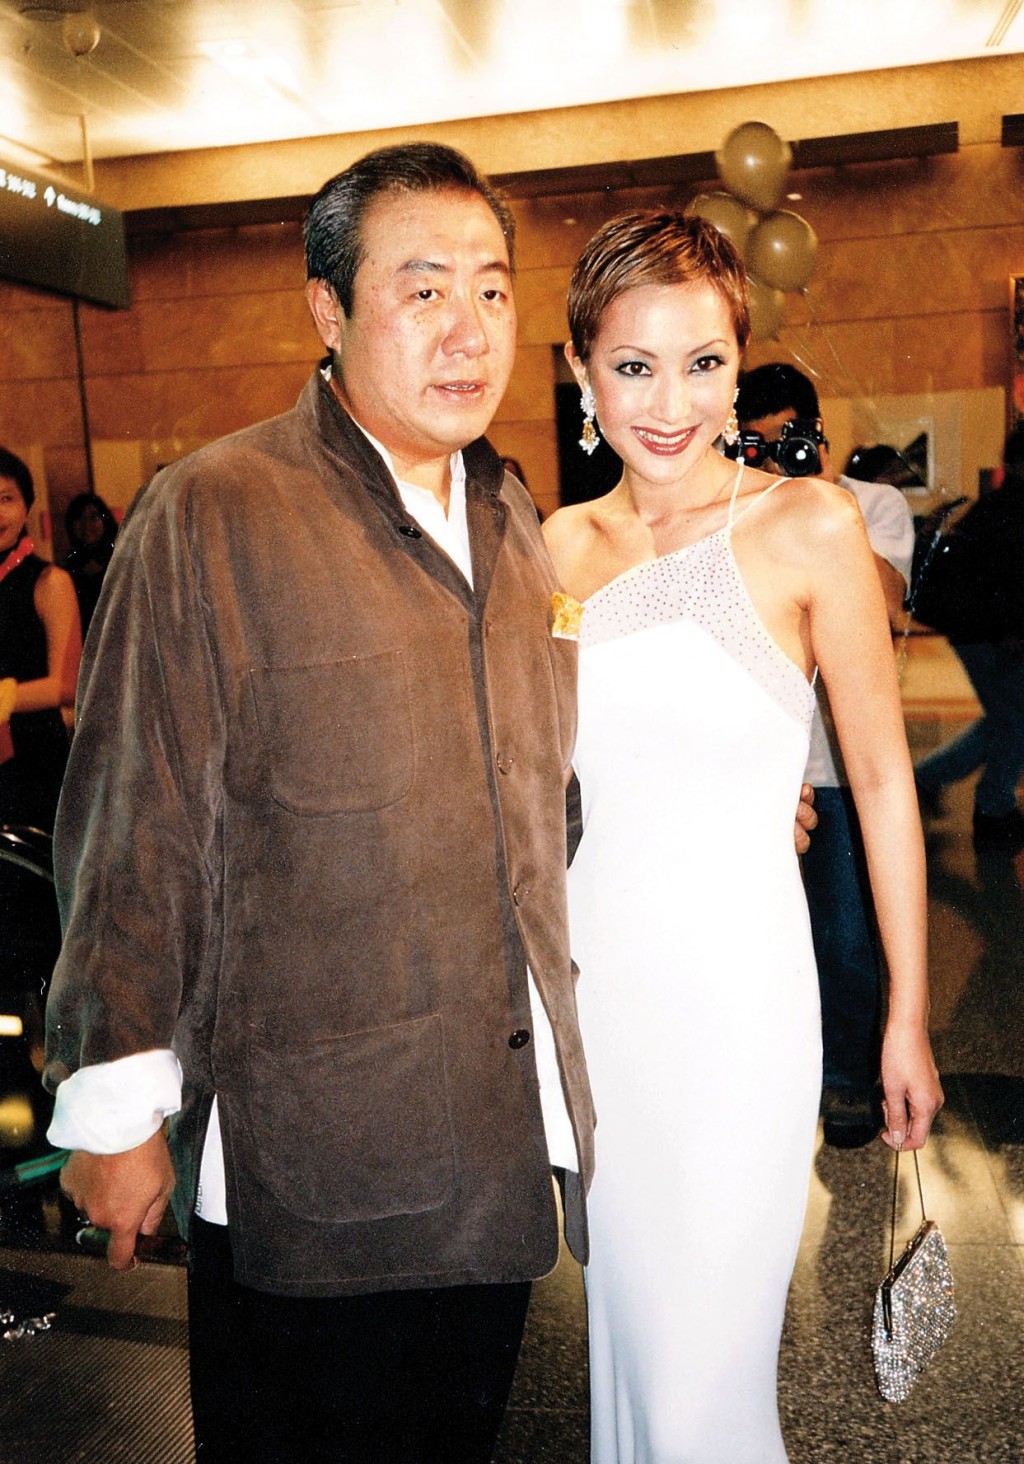 薛芷倫於十多年前與富商馬清偉離婚。